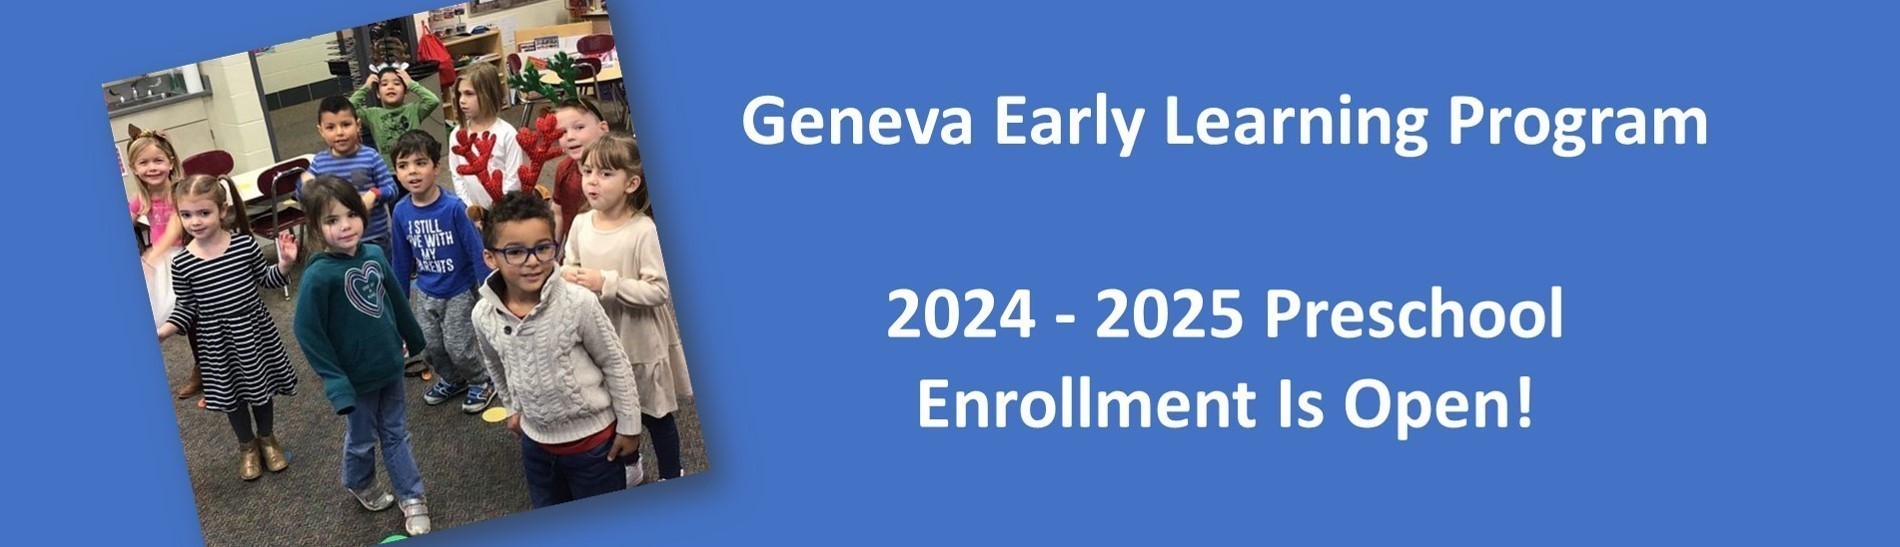 Preschool Enrollment is Open for 2024-2025